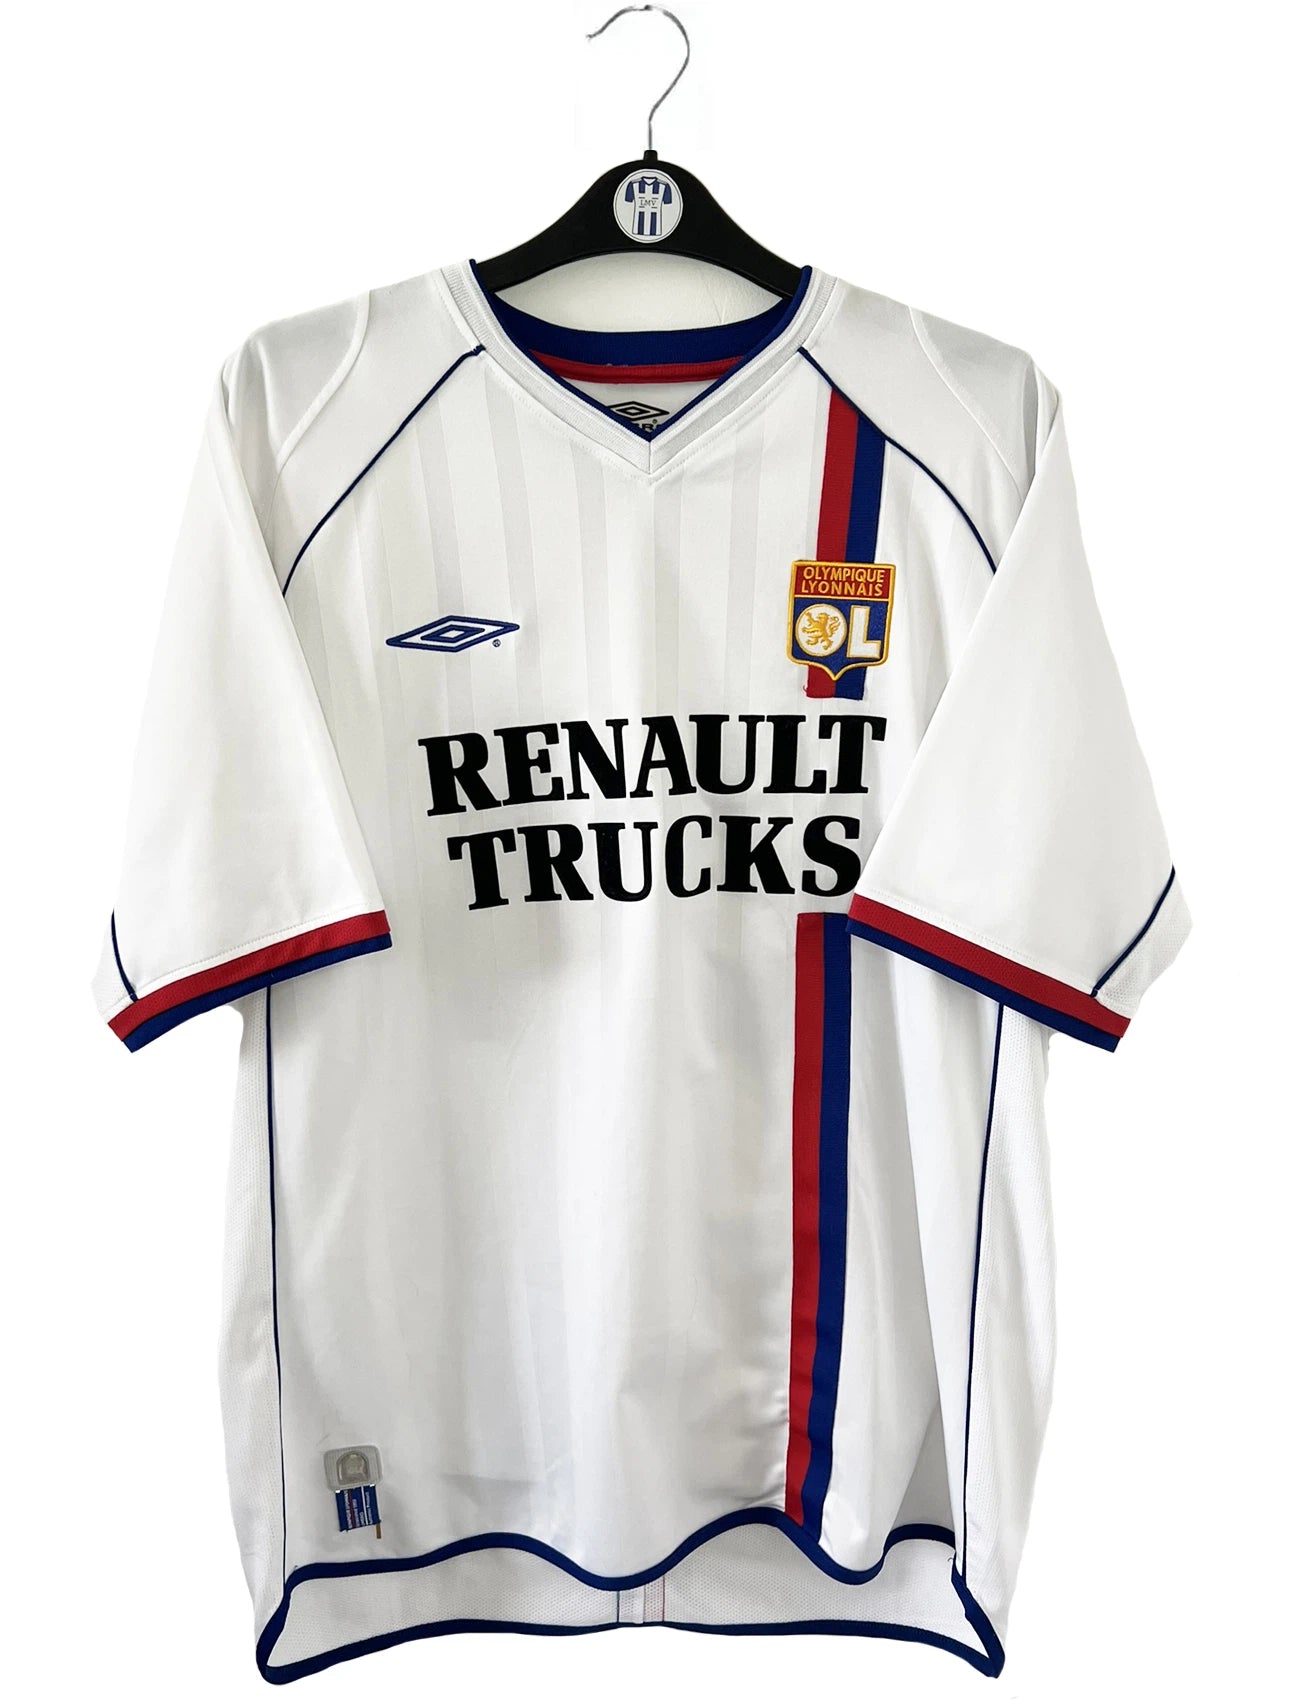 Maillot de foot vintage domicile de l'OL lors de la saison 2003/2004. Le maillot est de couleur blanc et bleu. On peut retrouver l'équipementier Umbro et le sponsor Renault Trucks. Le maillot est floqué du numéro 24 Vikash Dhorasoo. Il s'agit d'un maillot authentique